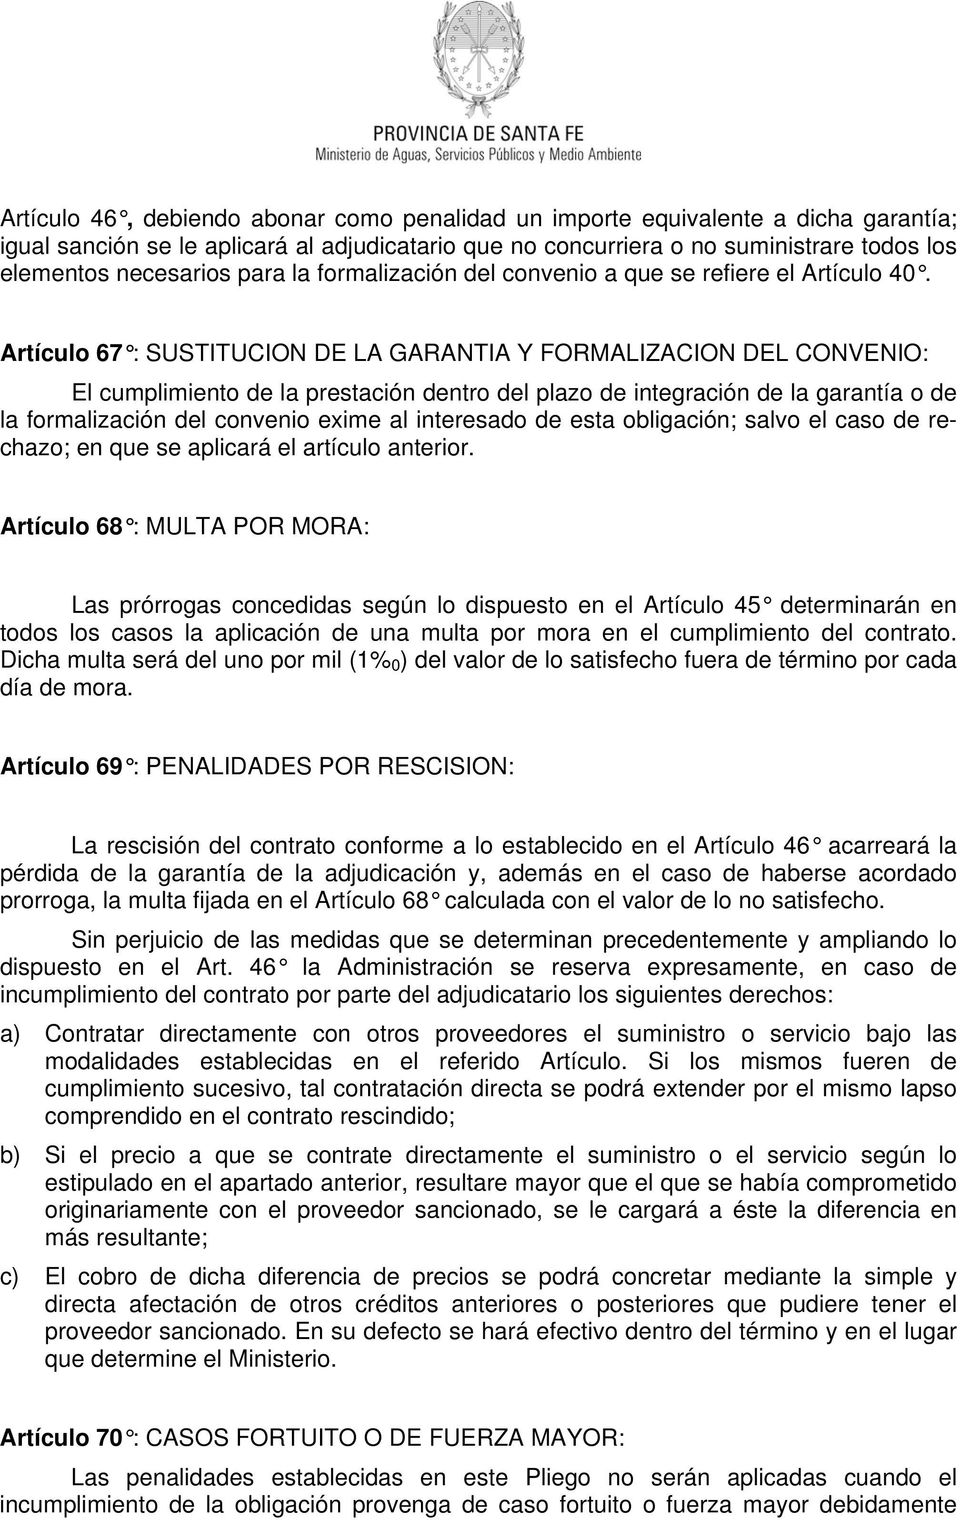 Artículo 67 : SUSTITUCION DE LA GARANTIA Y FORMALIZACION DEL CONVENIO: El cumplimiento de la prestación dentro del plazo de integración de la garantía o de la formalización del convenio exime al